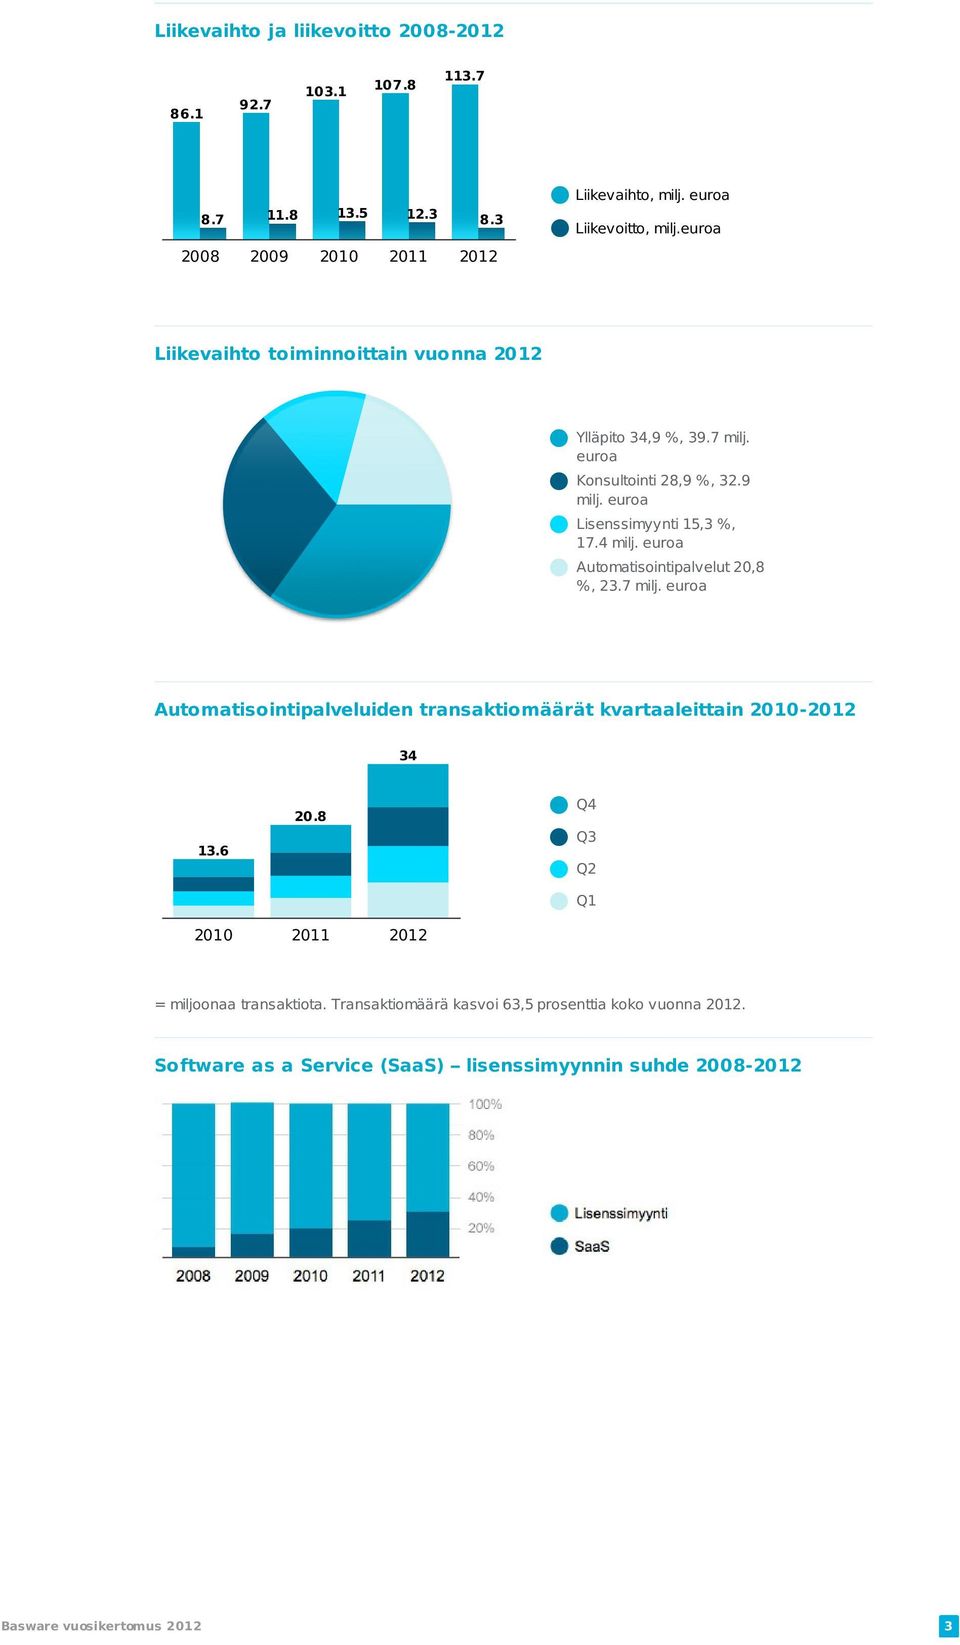 euroa Automatisointipalvelut 20,8 %, 23.7 milj. euroa Automatisointipalveluiden transaktiomäärät kvartaaleittain 2010-2012 34 13.6 20.